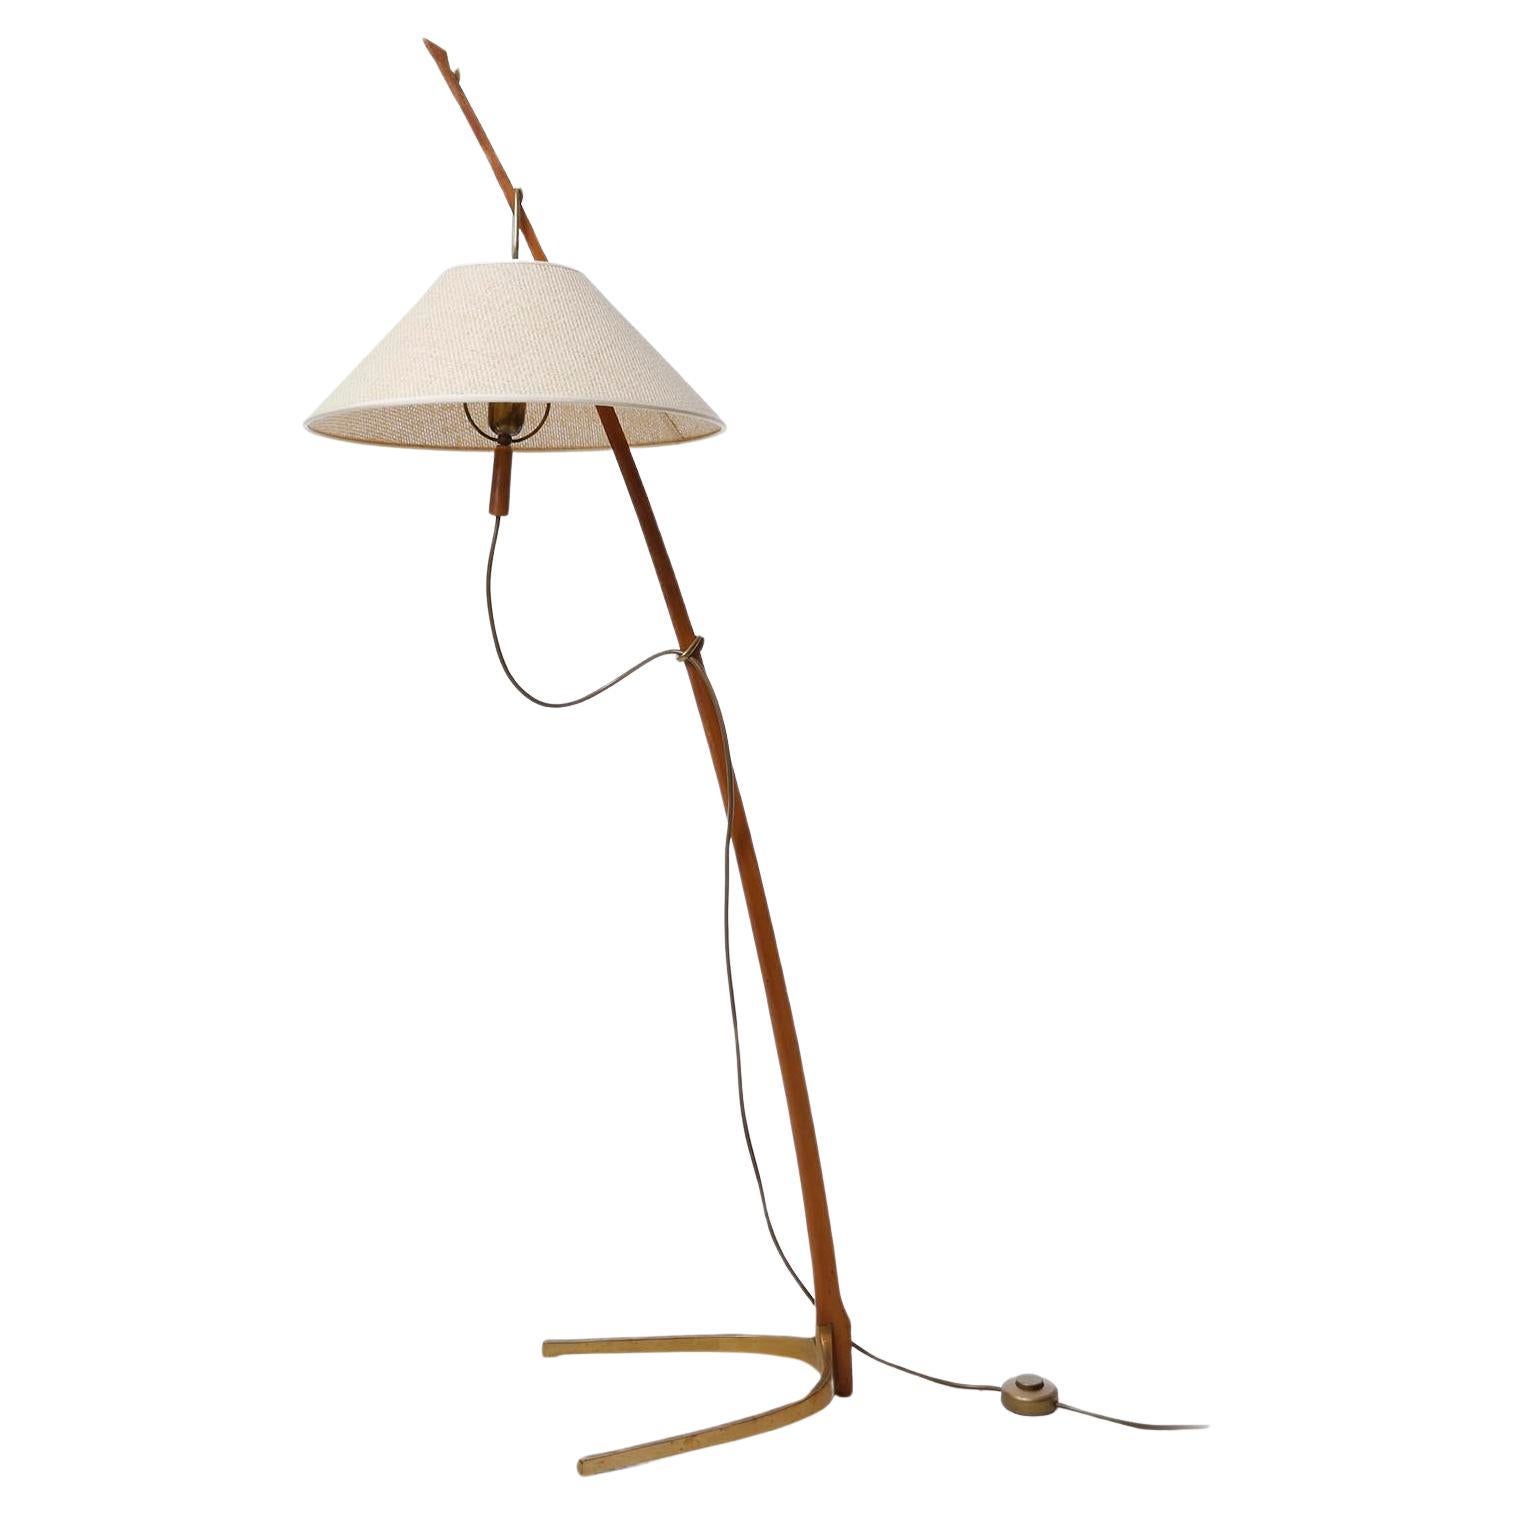 Eine prächtige Stehlampe von J.T. Kalmar, Wien, Österreich, hergestellt um die Jahrhundertmitte, um 1960 (1950er oder 1960er Jahre).
Die Leuchte ist in den Kalmar-Katalogen von 1952 sowie von 1960 dokumentiert.
Dornstab